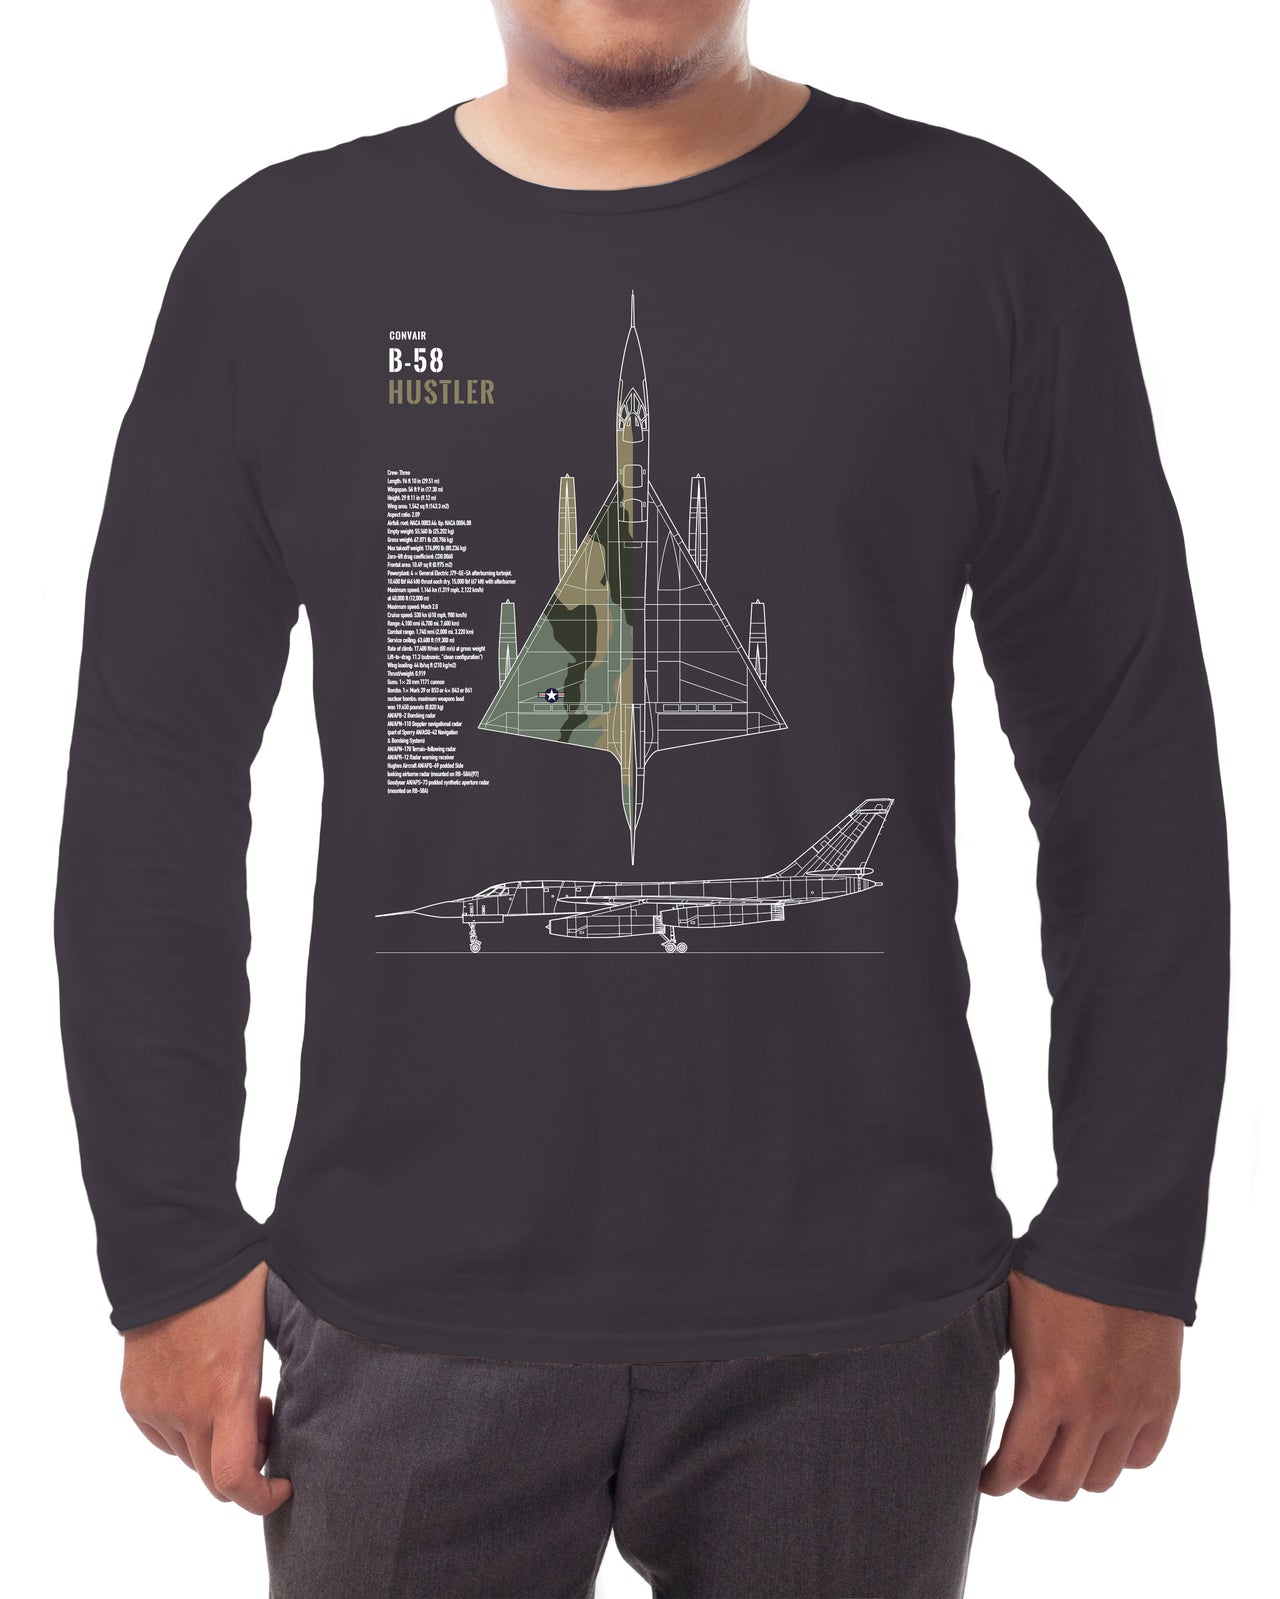 B-58 Hustler - Long-sleeve T-shirt